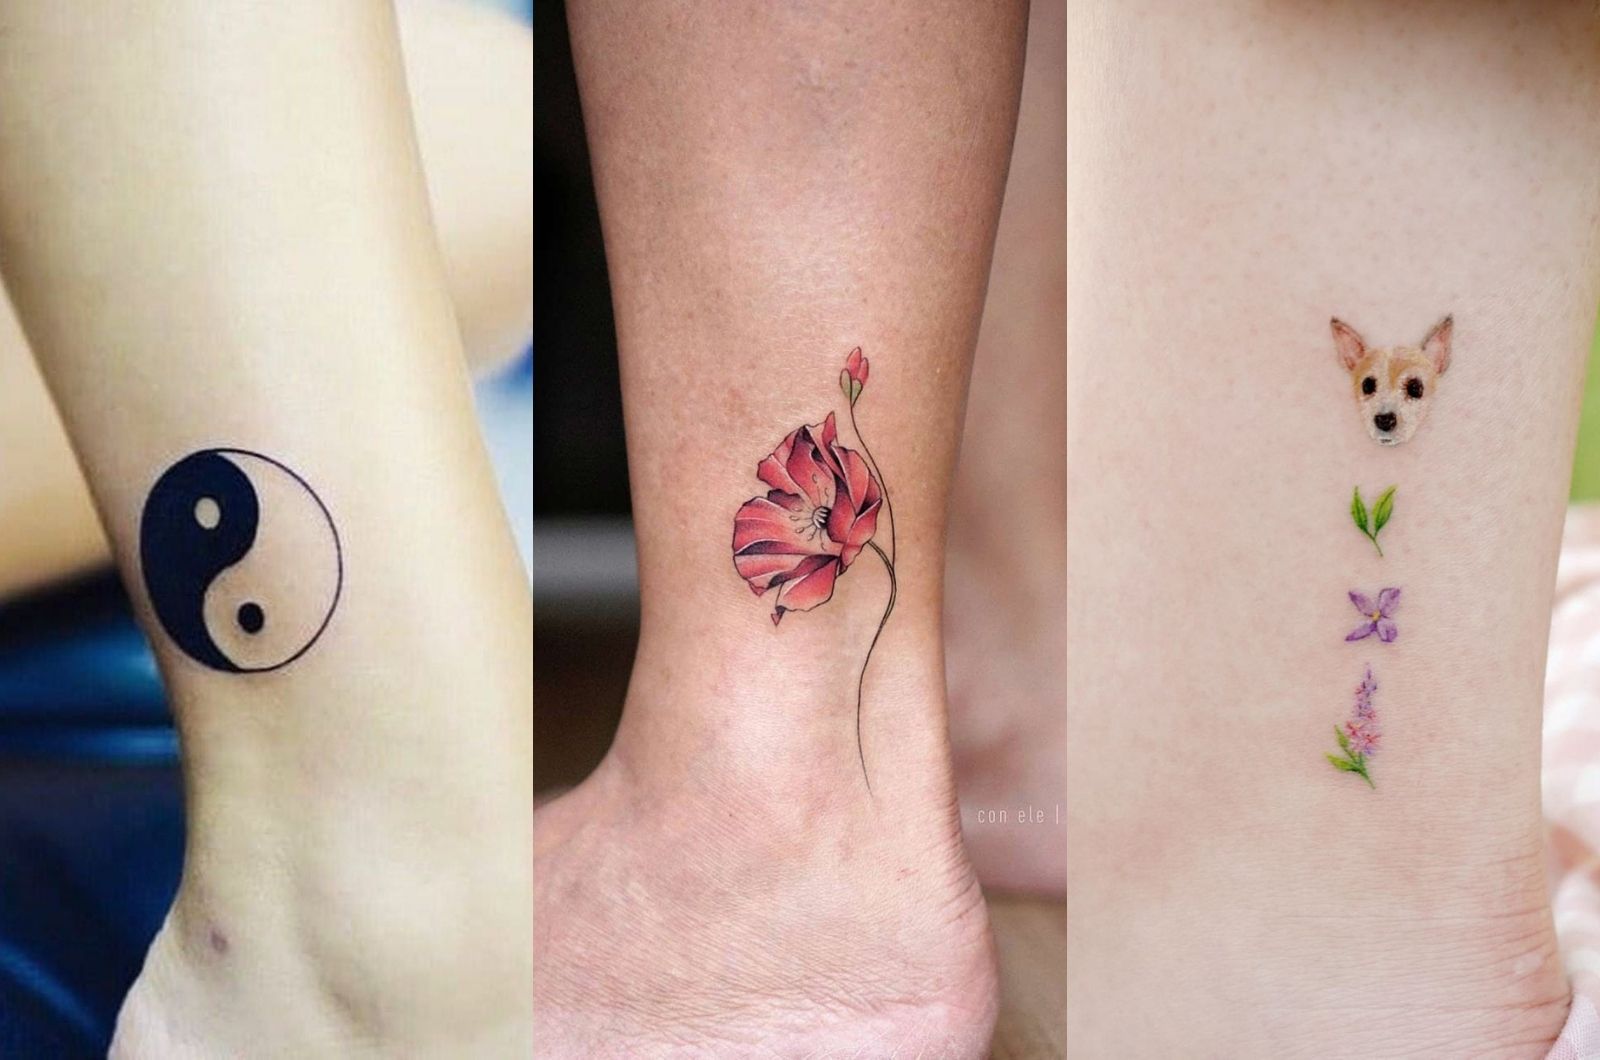 Tatuajes para mujeres que quieren darle un toque chic a sus tobillos